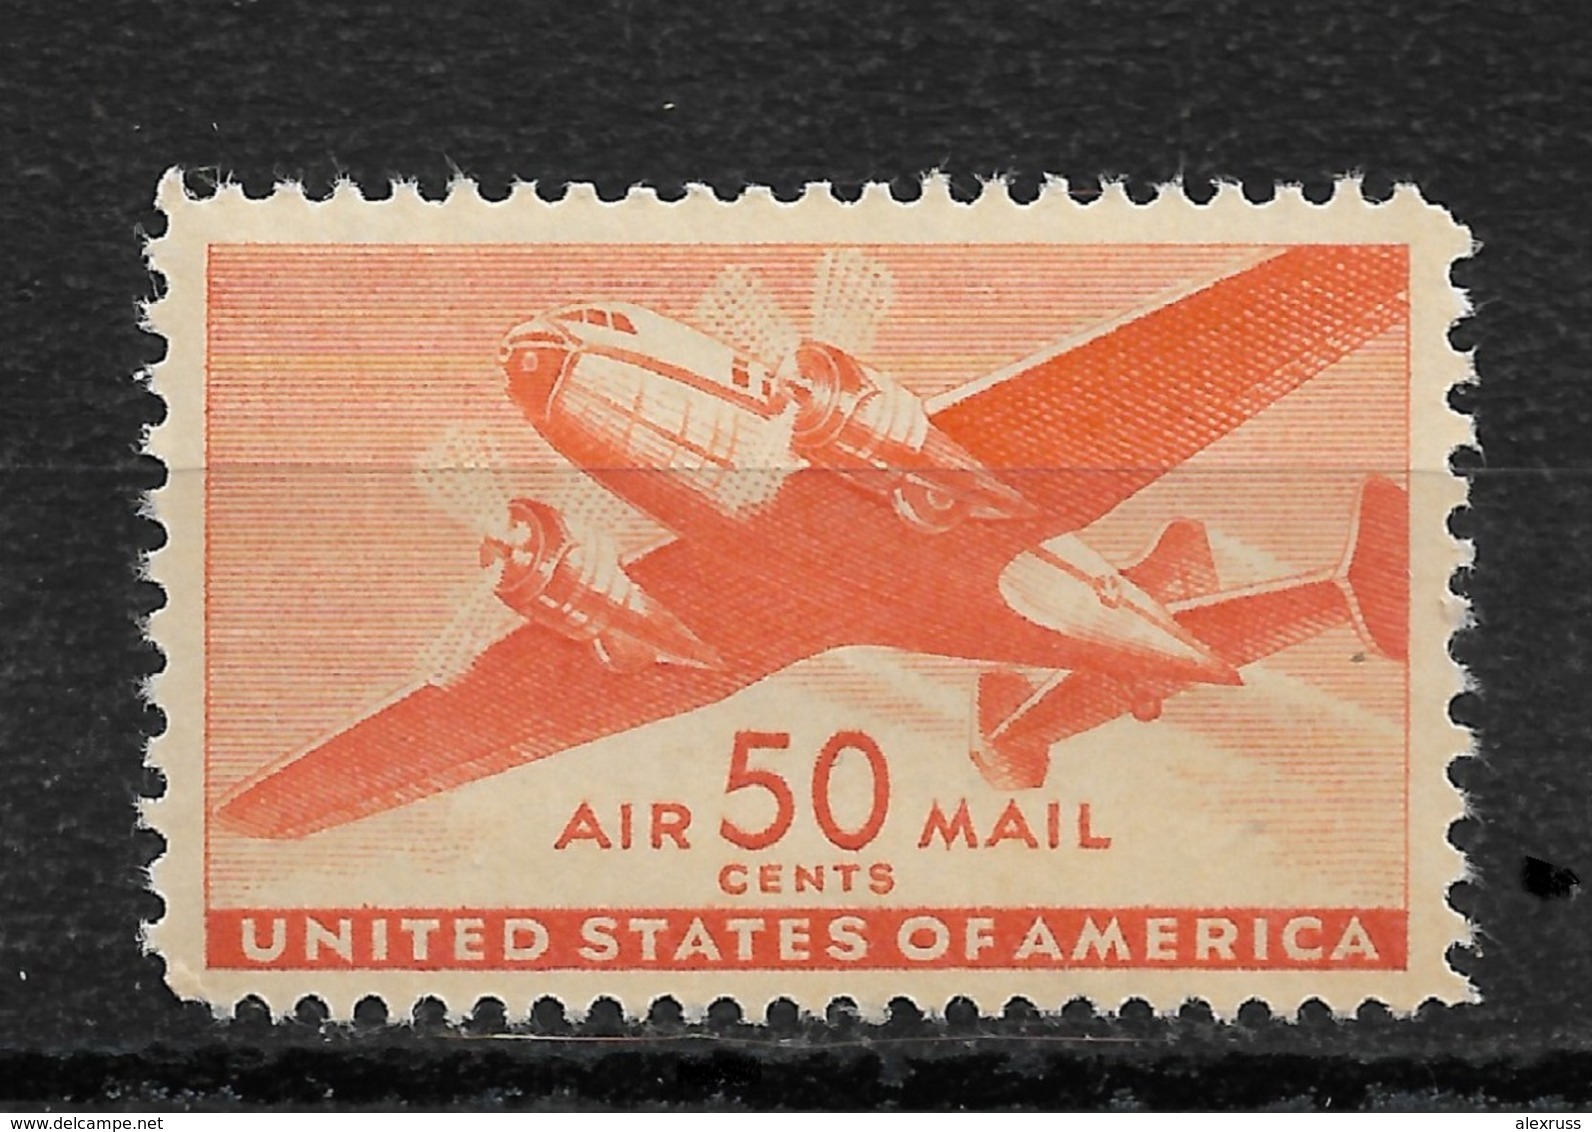 US 1941 Air Mail,50c Scott # C31,VF MNH** (RN-8) - 2b. 1941-1960 Ongebruikt